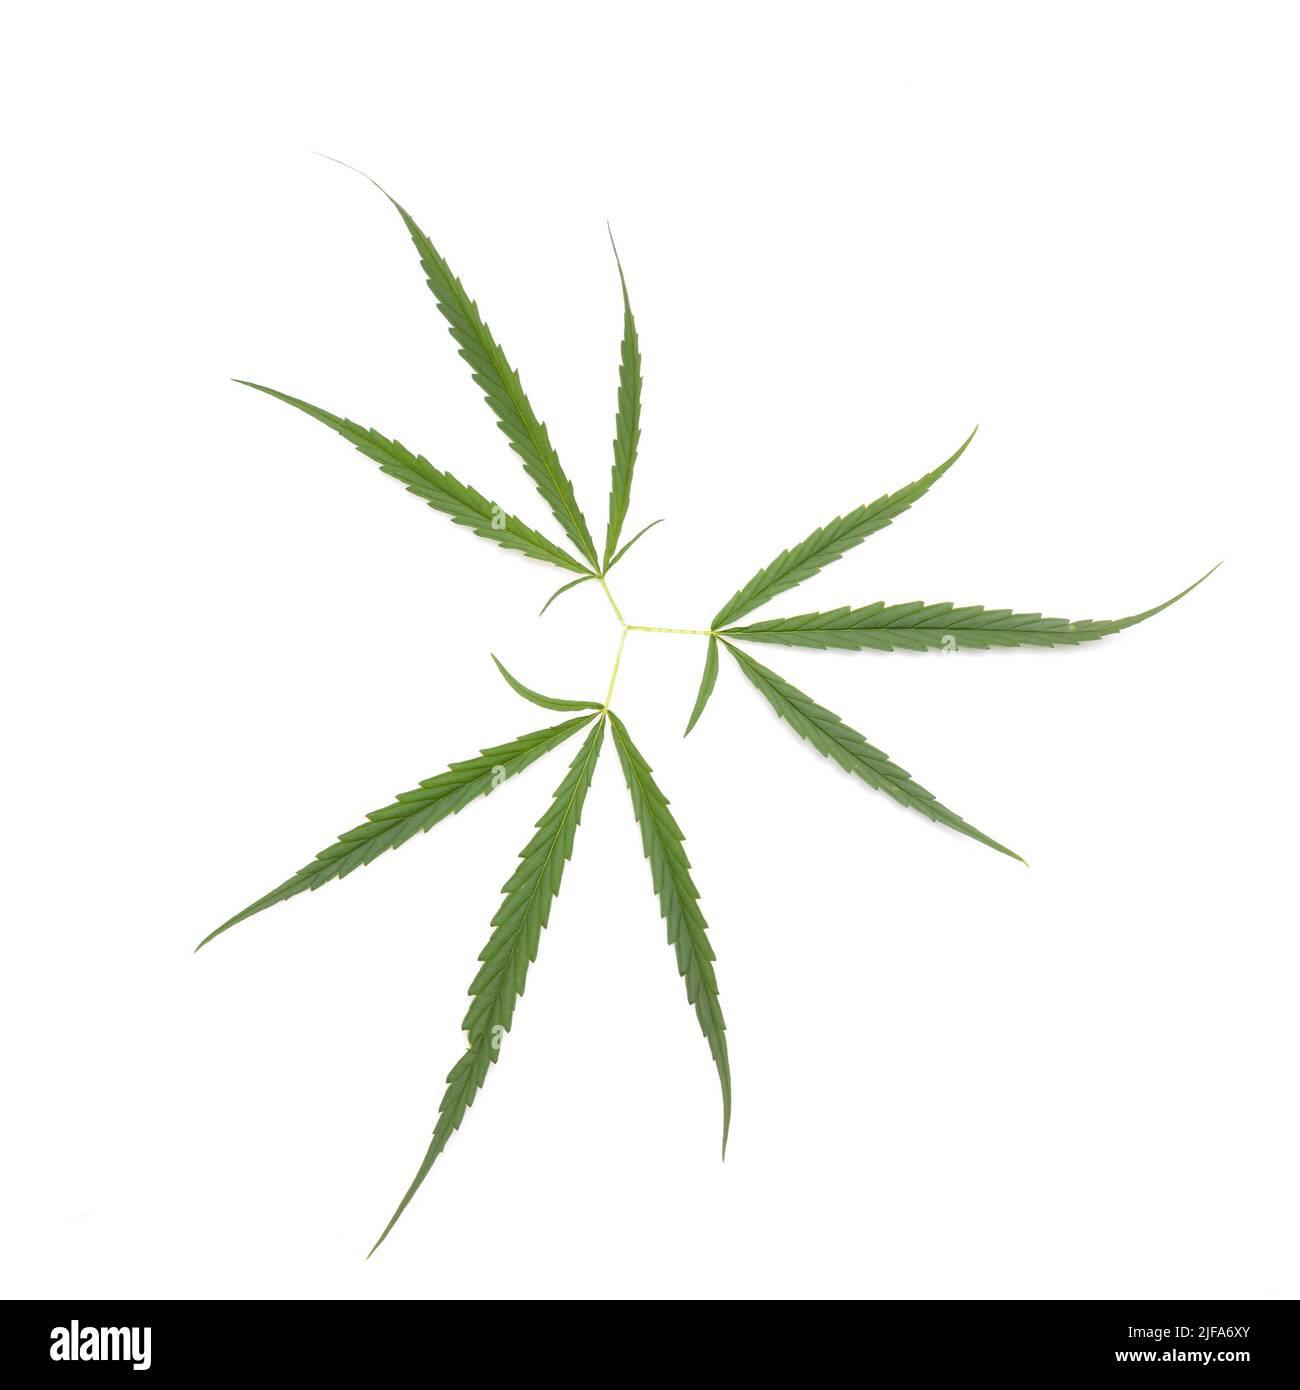 Grünes Blatt frisch vom Marihuana-Baum. Studioaufnahme isoliert auf weißem Hintergrund Stockfoto